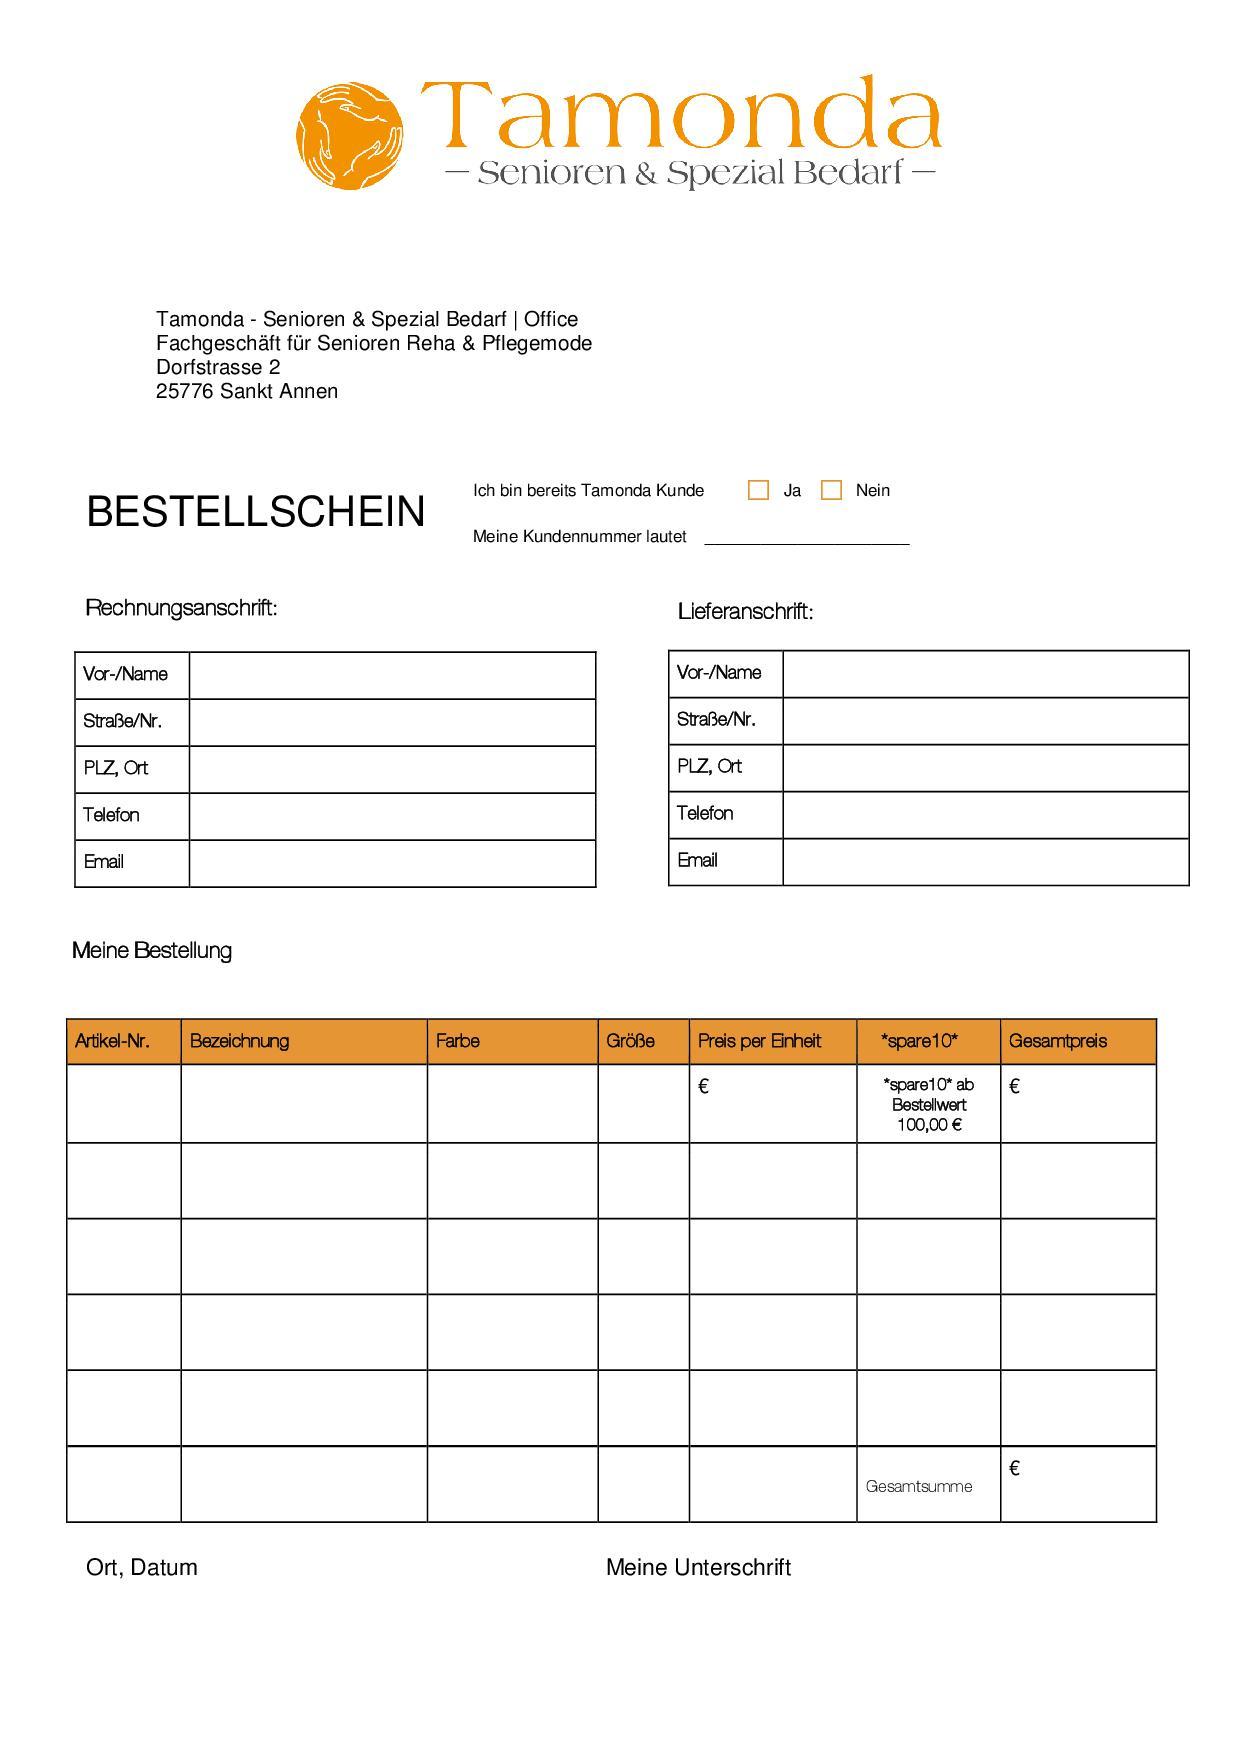 Bestellschein - zum Download PDF